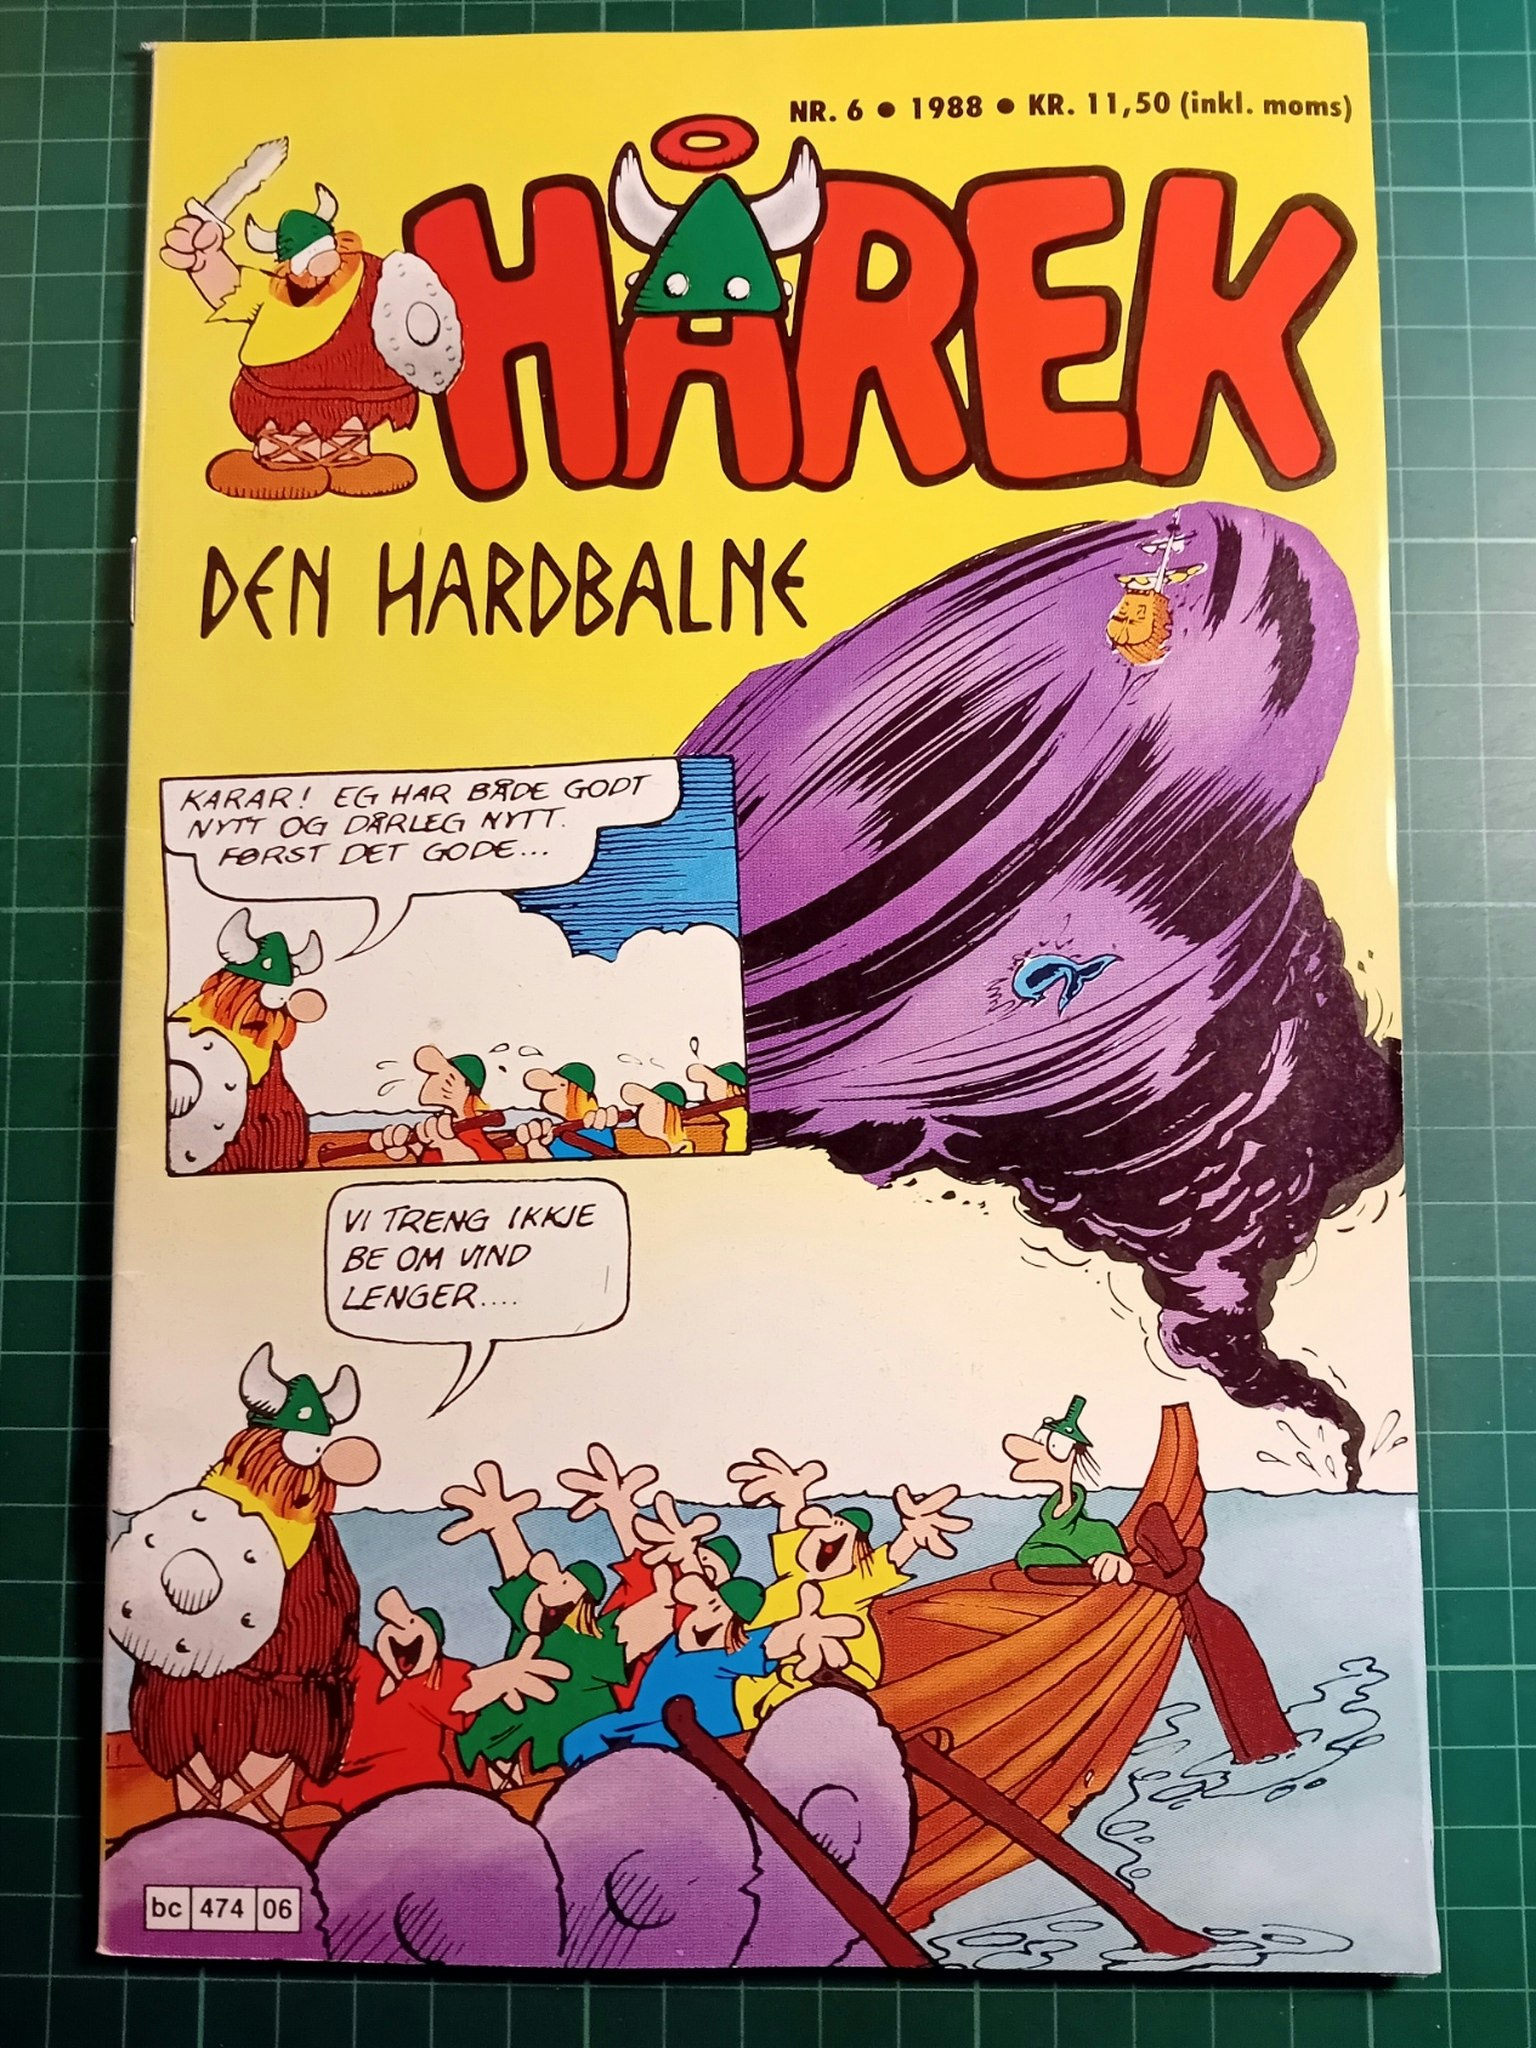 Hårek 1988 - 06